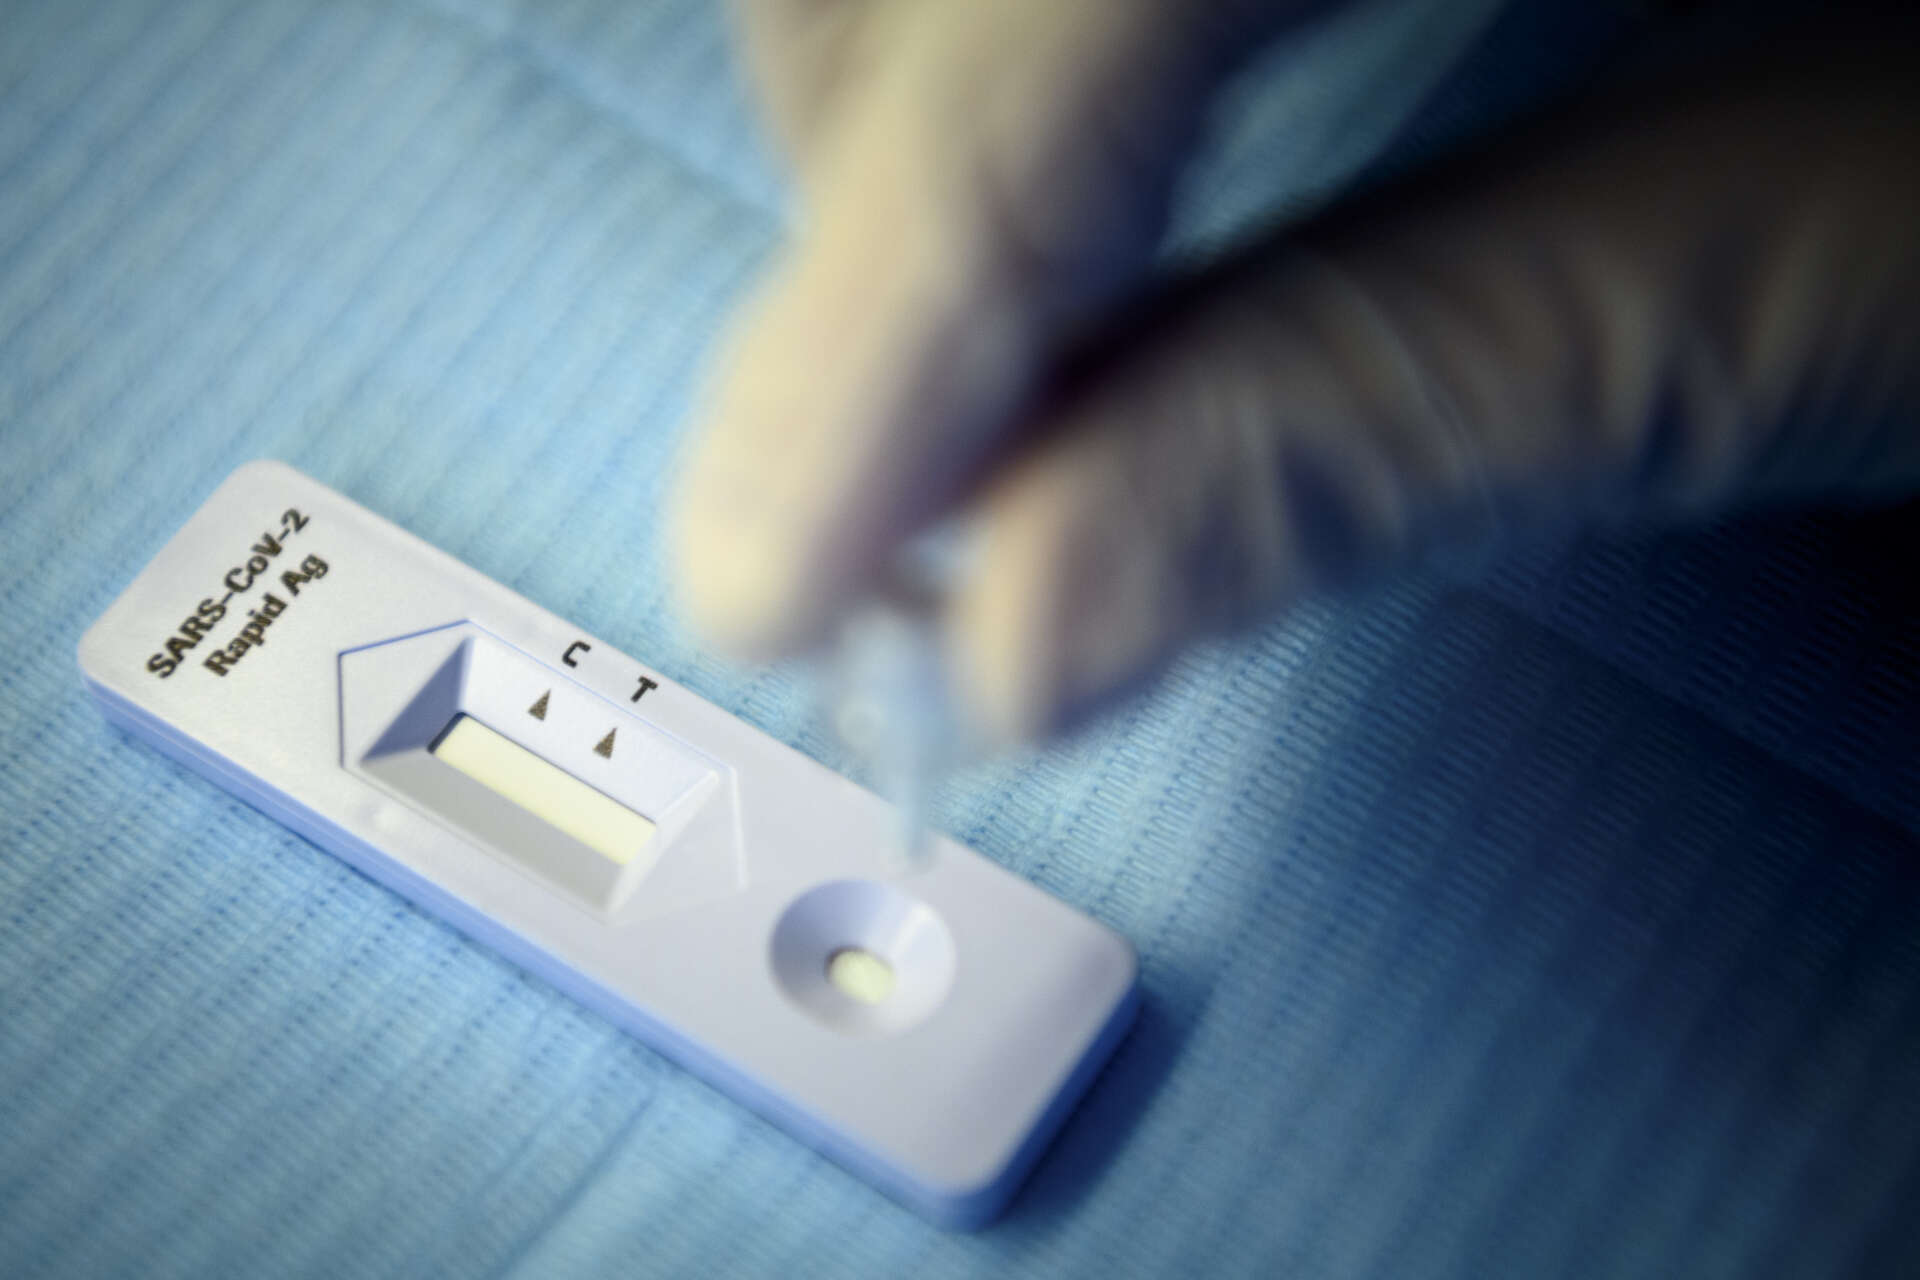 Flera länder kräver att man kan uppvisa ett negativt covid-19-test för att få resa in i landet. I vissa fall räcker det med ett snabbtest, så kallat antigen-test, som på bilden. I andra fall krävs ett PCR-test. Arkivbild.